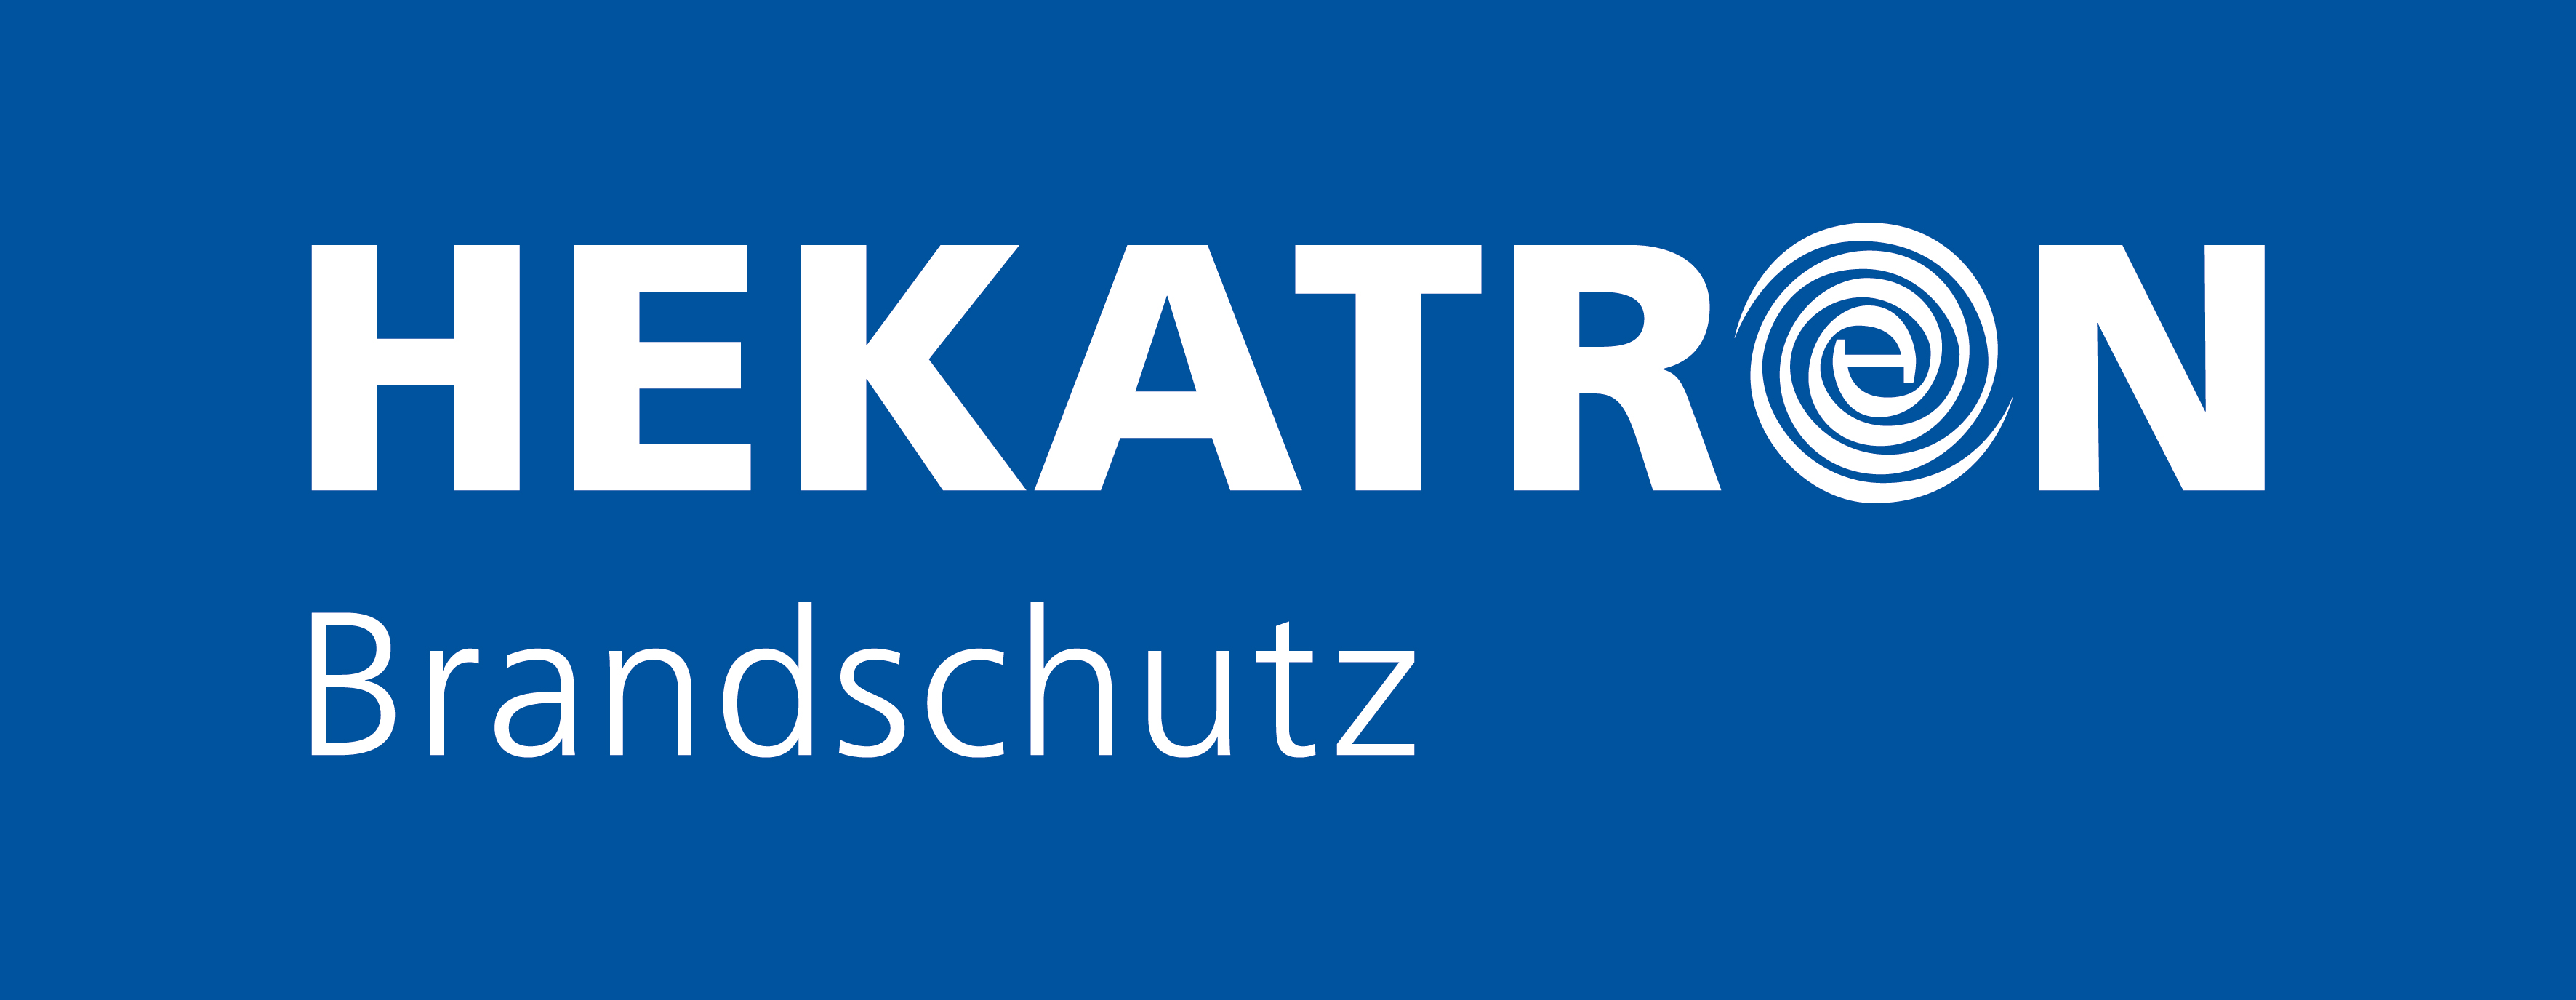 Logo-Hekatron-Brandschutz-RGB